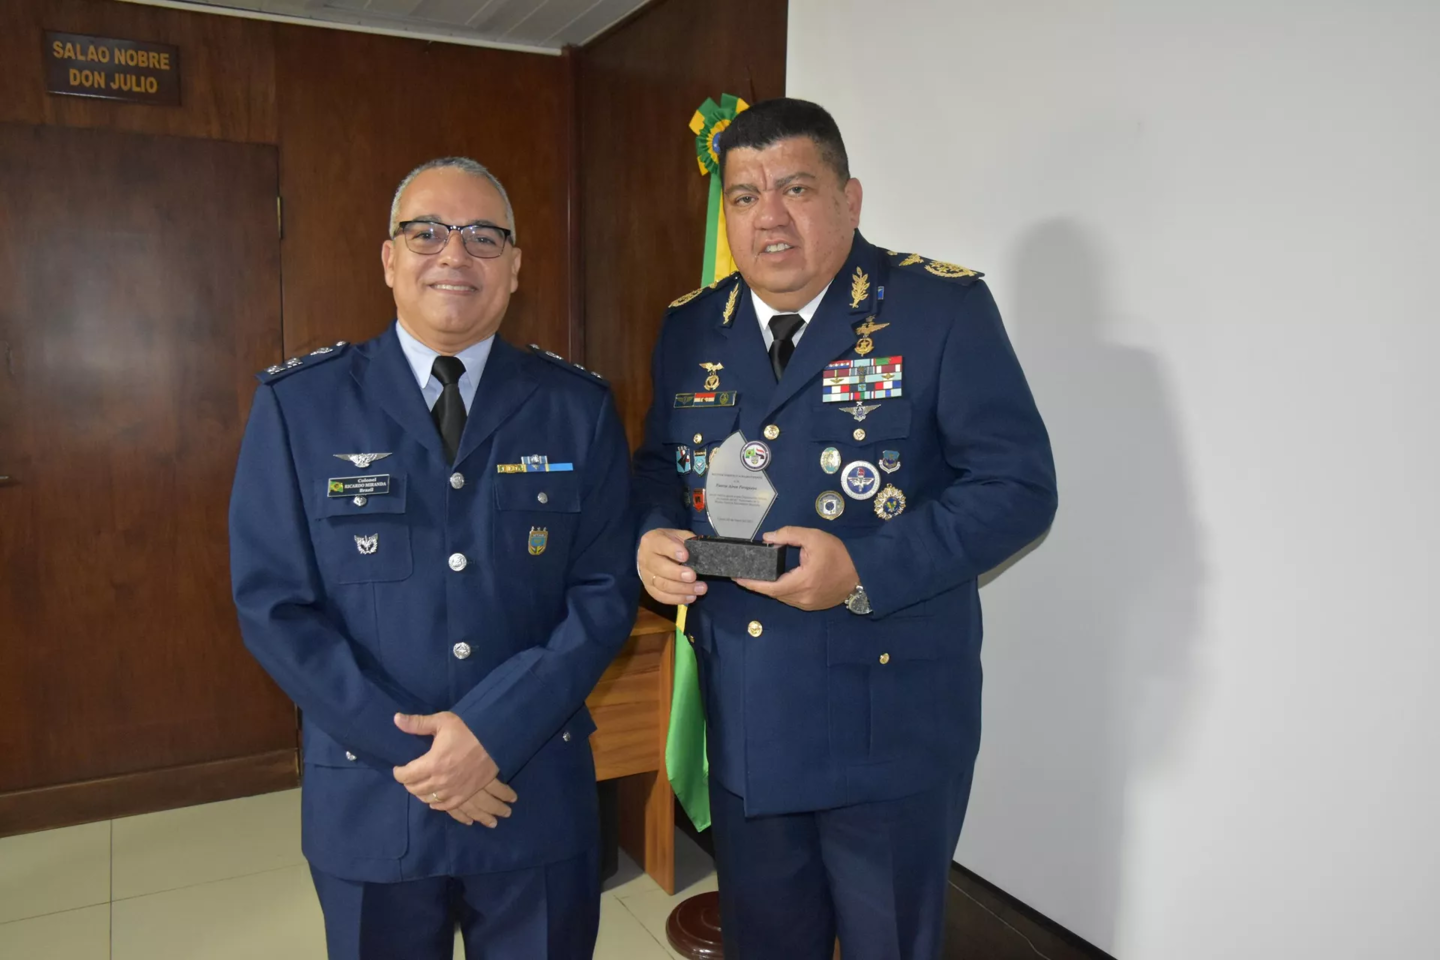 Arturo Javier González Ocampo (à direita), ex-comandante da Força Aérea do Paraguai, durante homenagem concedida pela Força Aérea Brasileira (FAB) na comemoração de 41 anos da Missão Técnica Aeronáutica Brasileira (MTAB)  Foto / Divulgação / Força Aérea 